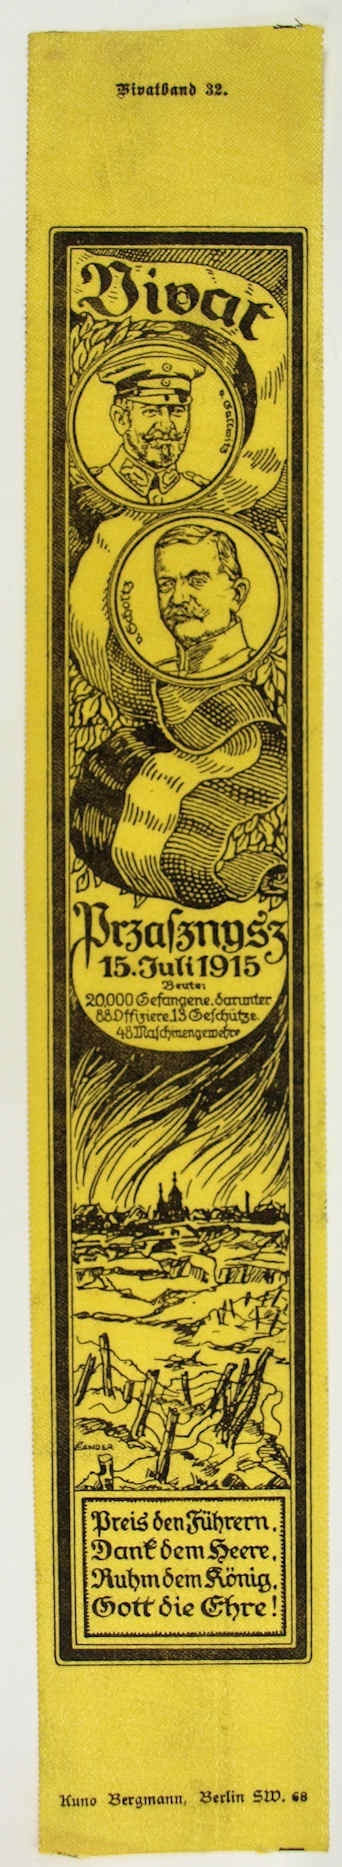 Vivatband anlässlich der Schlacht bei Przasznysz, 1. Weltkrieg 1915 (Museum Weißenfels - Schloss Neu-Augustusburg CC BY-NC-SA)